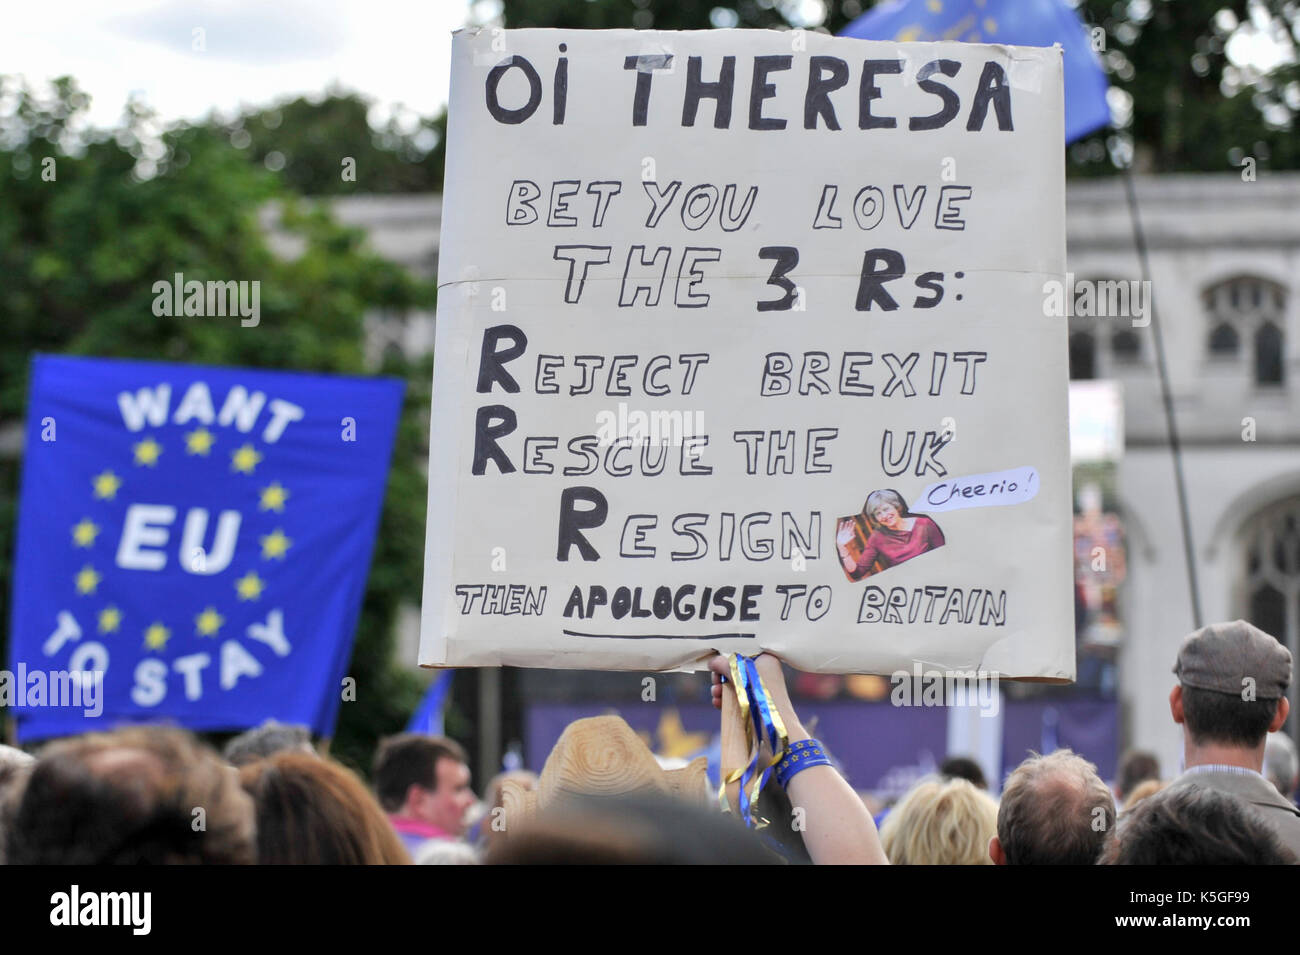 Londres, Royaume-Uni. 9 septembre 2017. Anti-Brexit manifestants agitent des drapeaux et bannières au cours d'une marche pour l'Europe rassemblement à la place du Parlement faisant campagne pour le renouvellement de l'adhésion de l'Union européenne. Crédit : Stephen Chung / Alamy Live News Banque D'Images